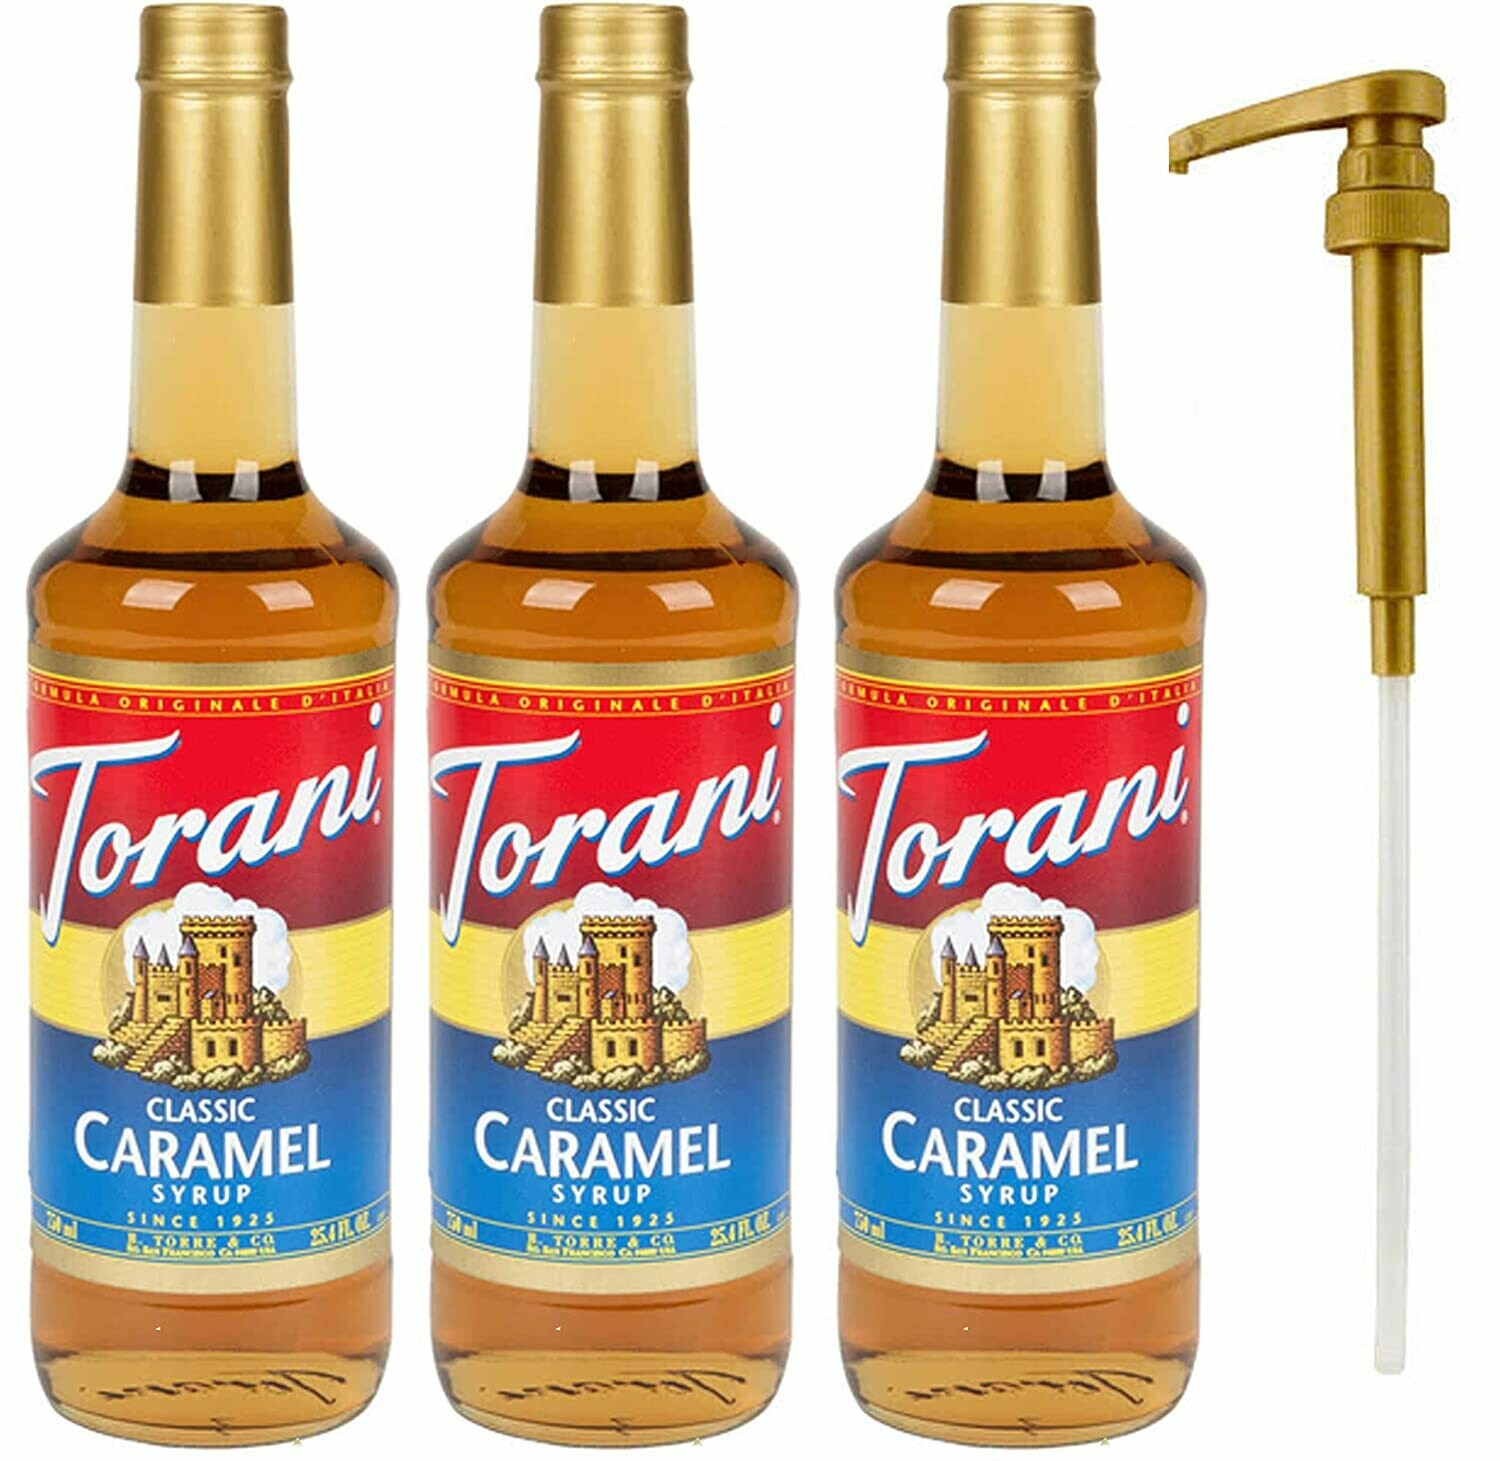 Torani Sirop Caramel